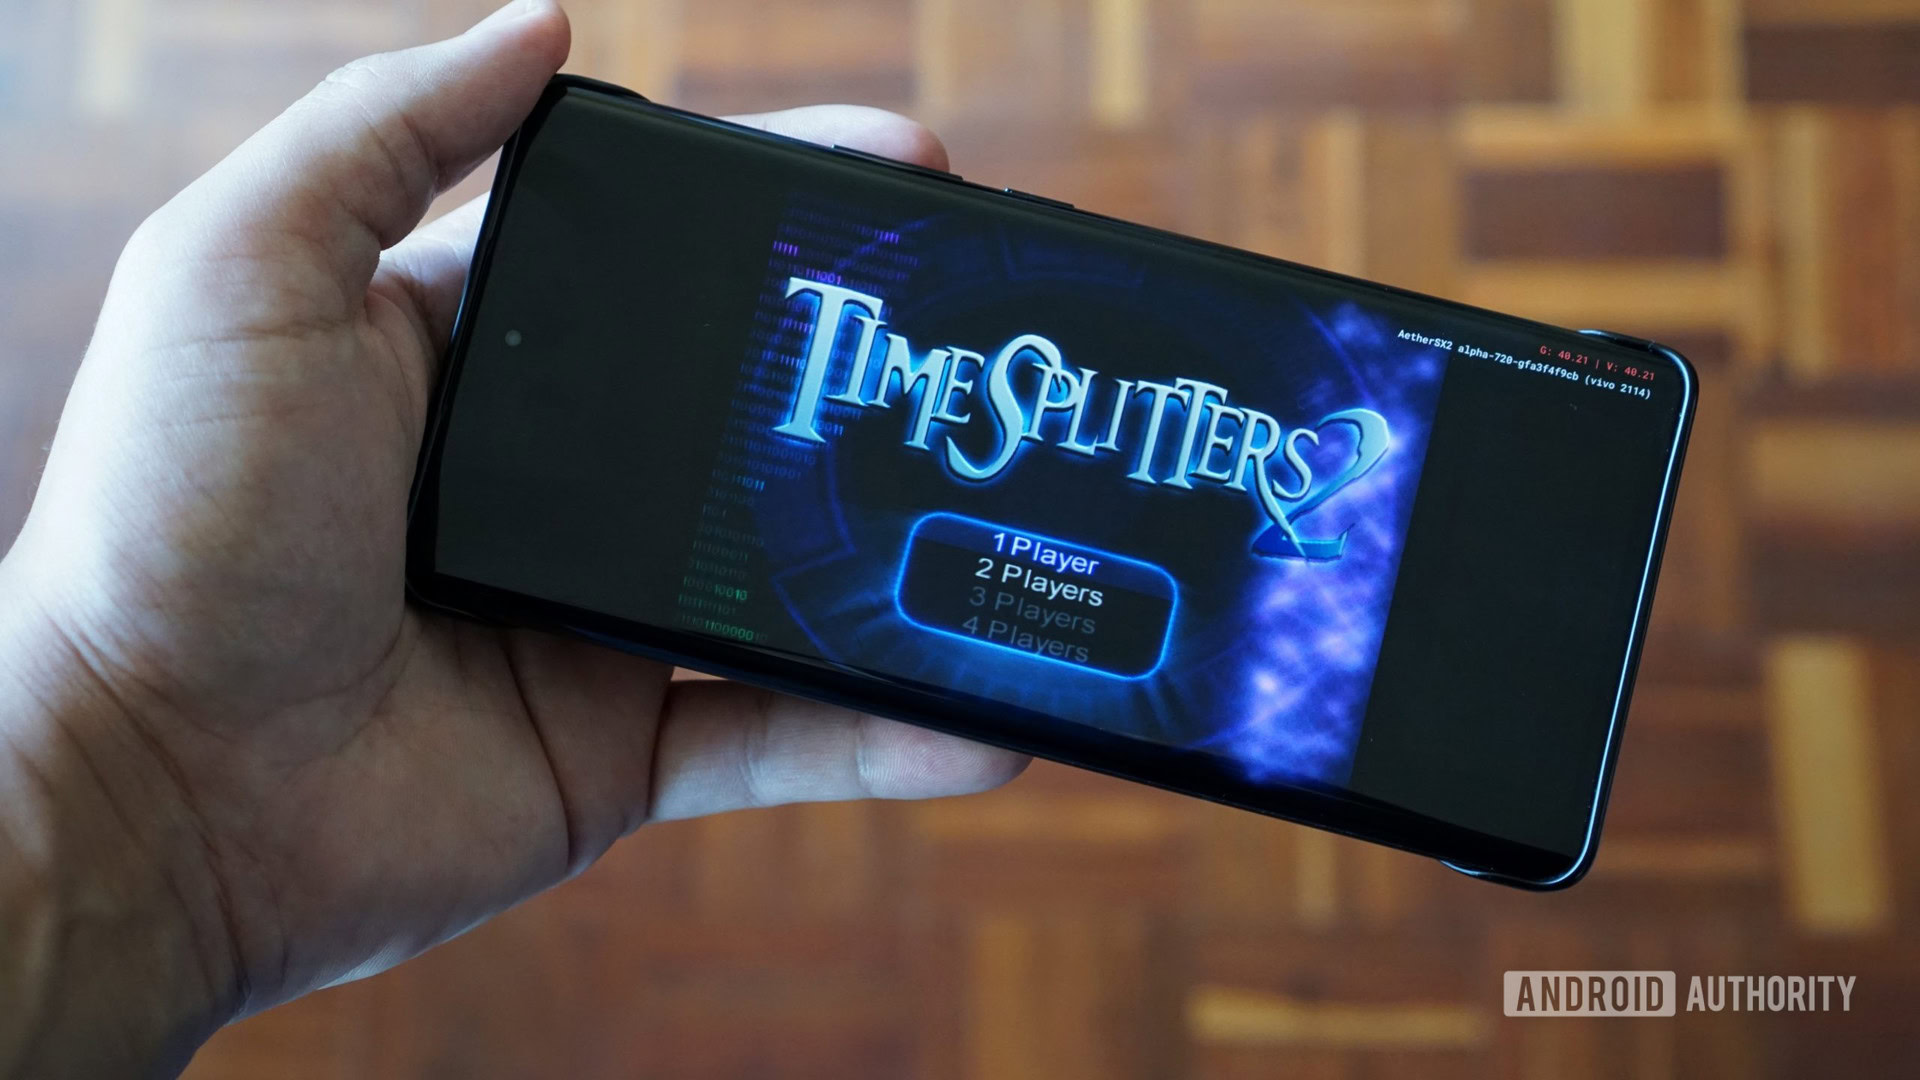 AetherSX2: o melhor emulador de PS2 para Android Grátis - Mobile Gamer